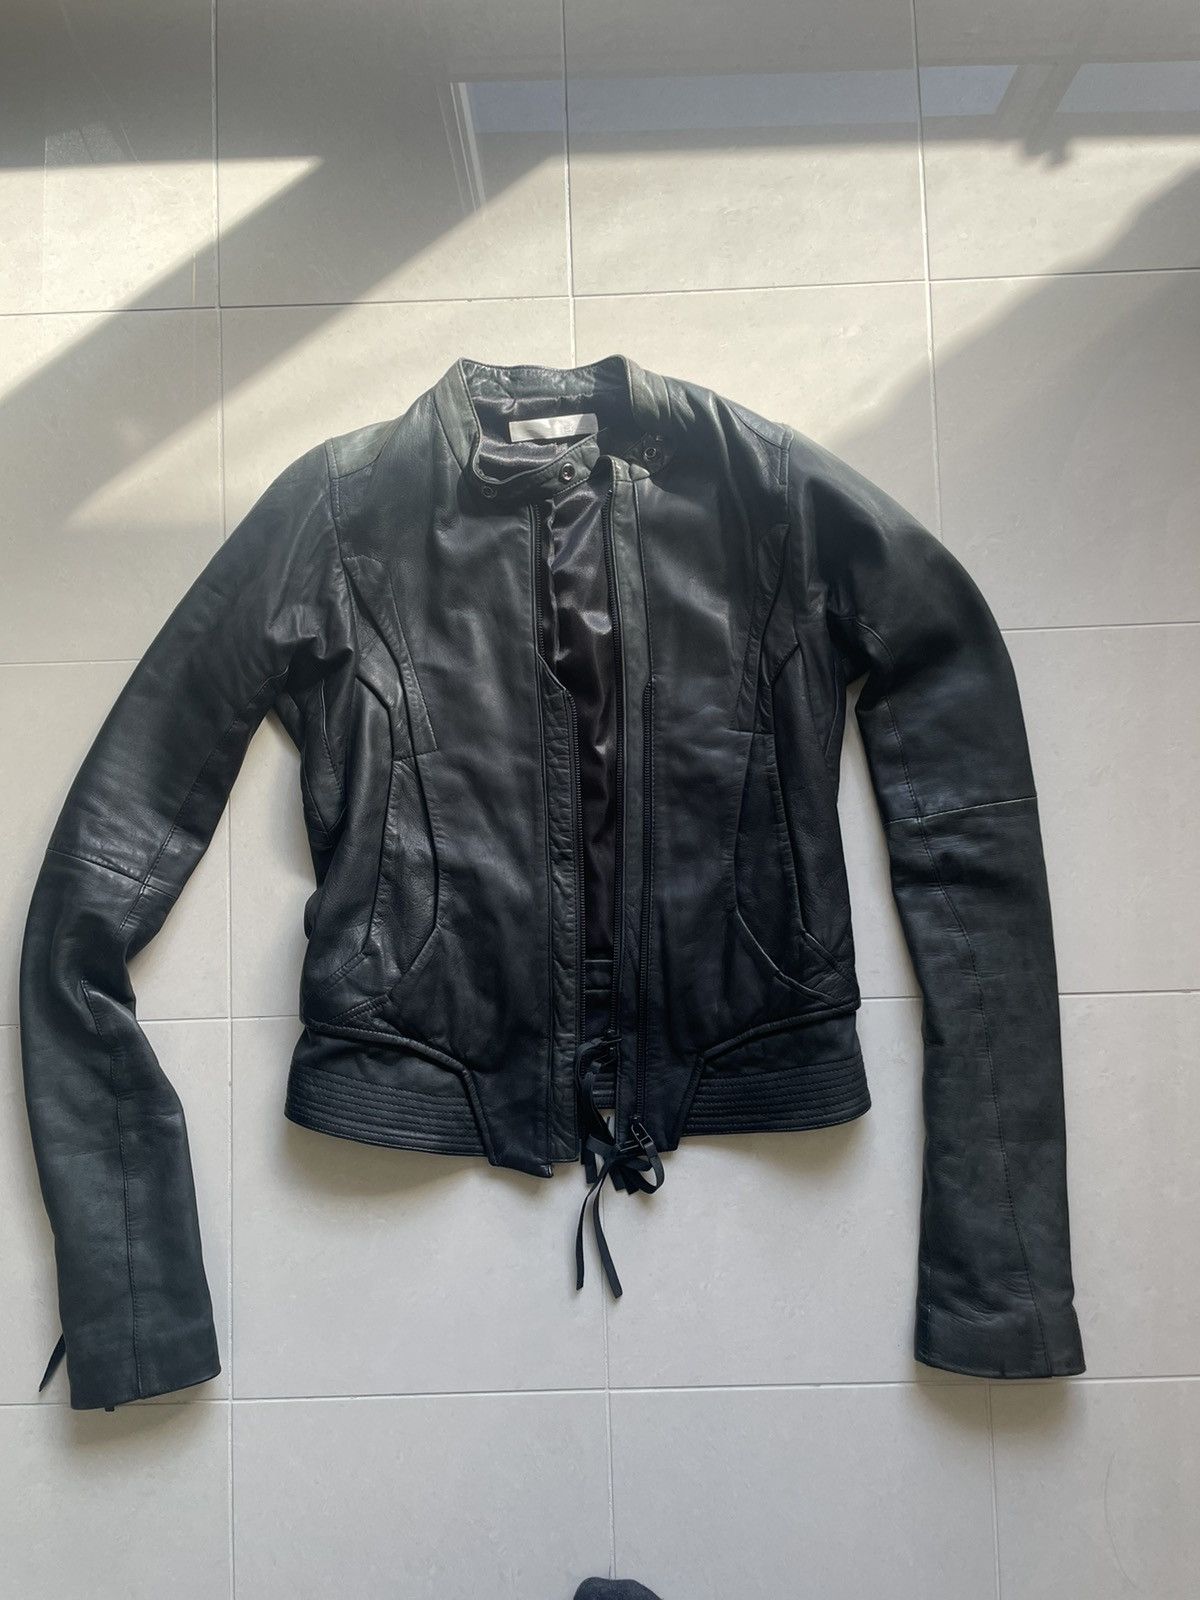 Ekam Ekam leather jacket | Grailed